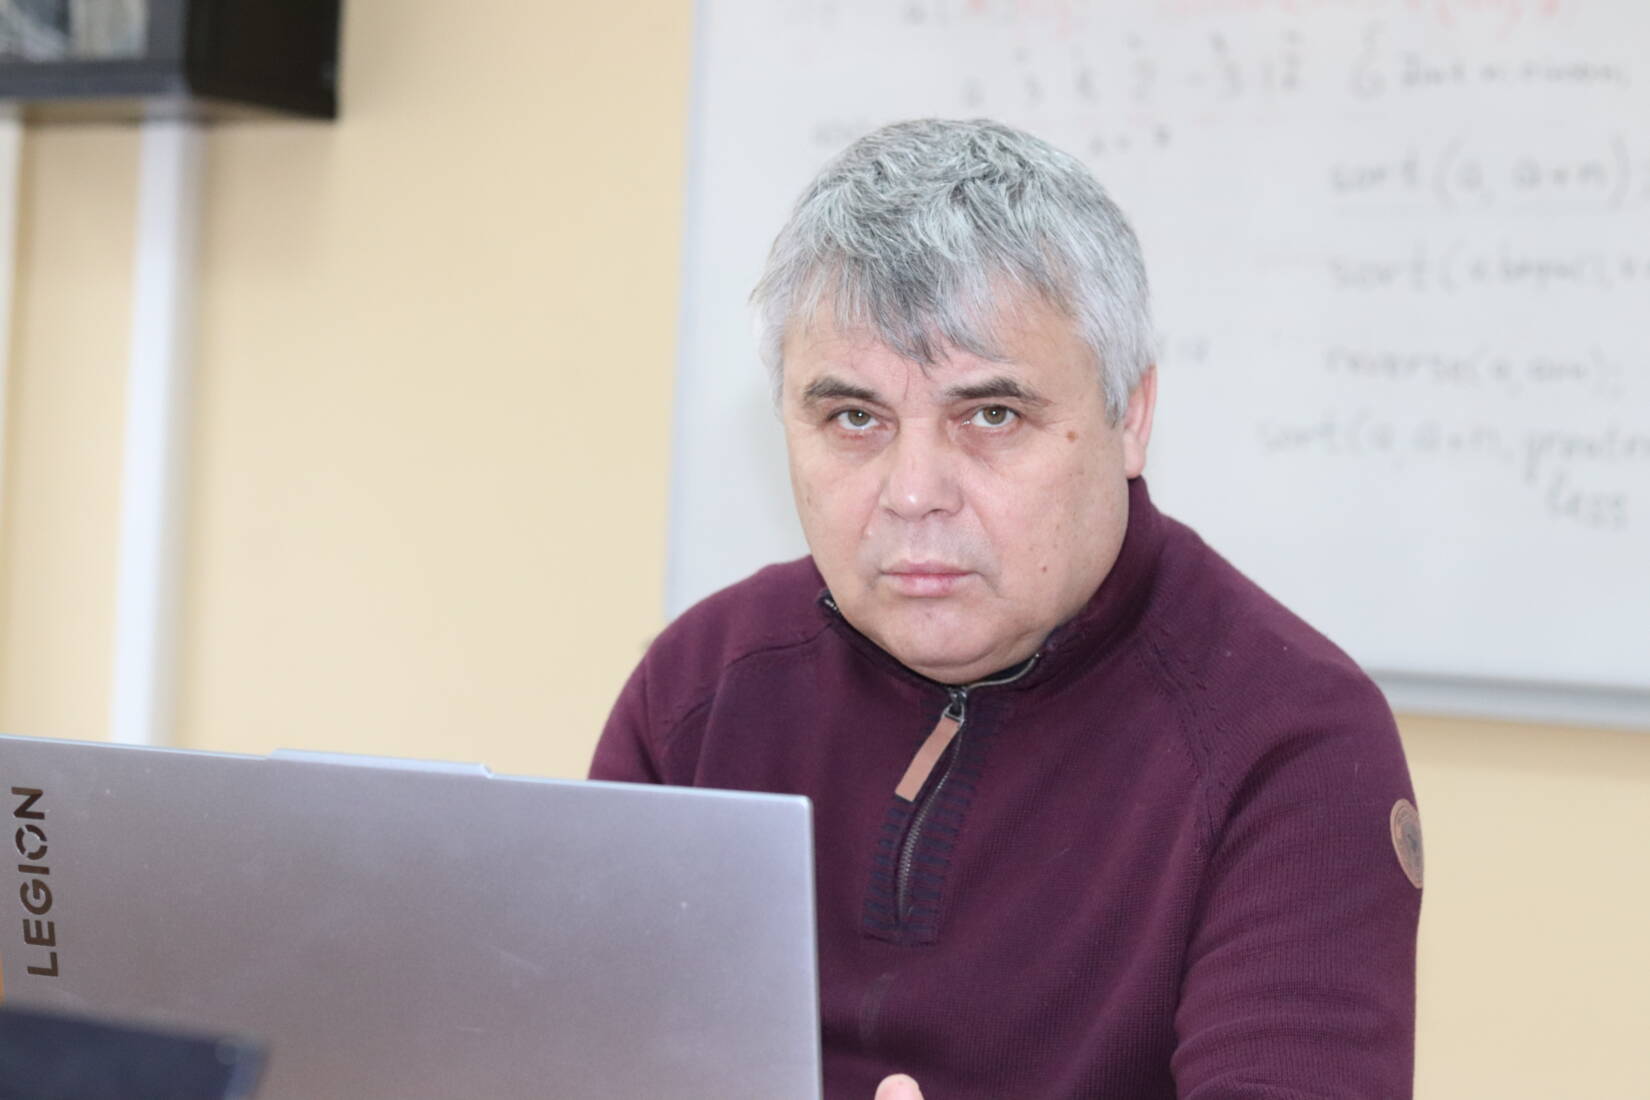 Ужнівці проводять Всеукраїнську зимову школу програмування